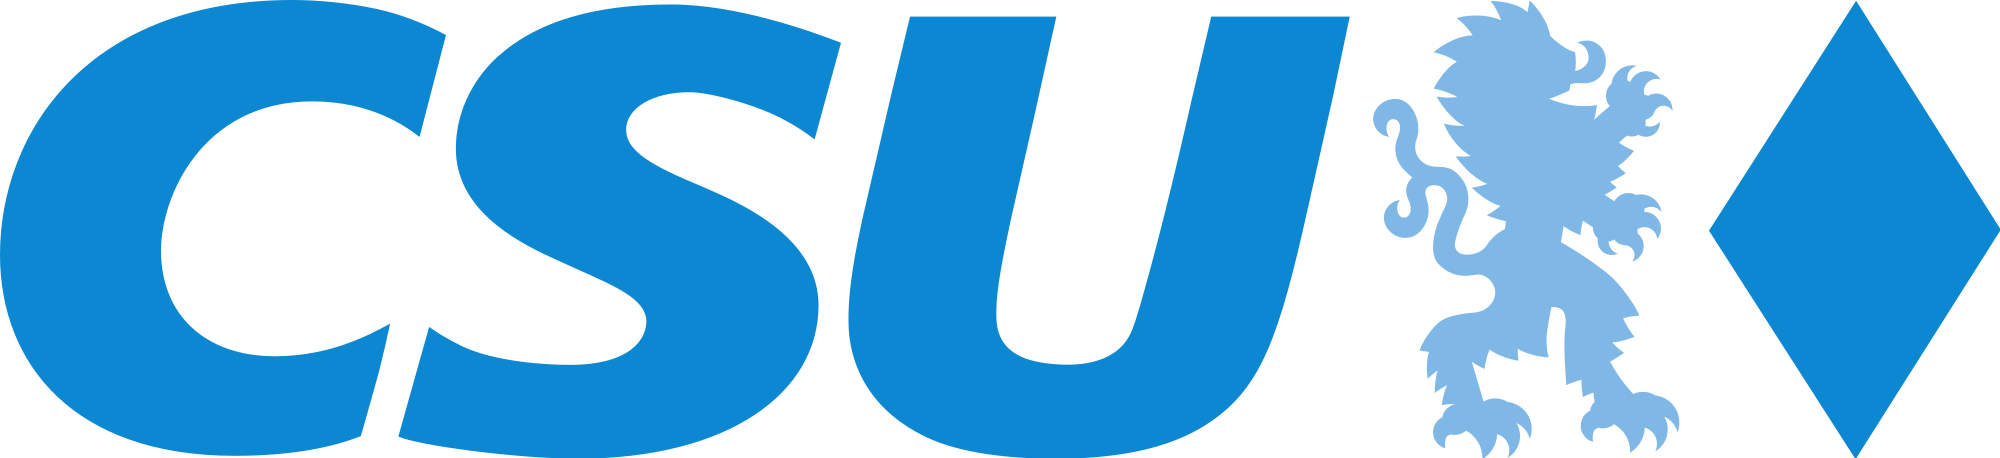 CSU Logo mit Schrit und blauer Raute